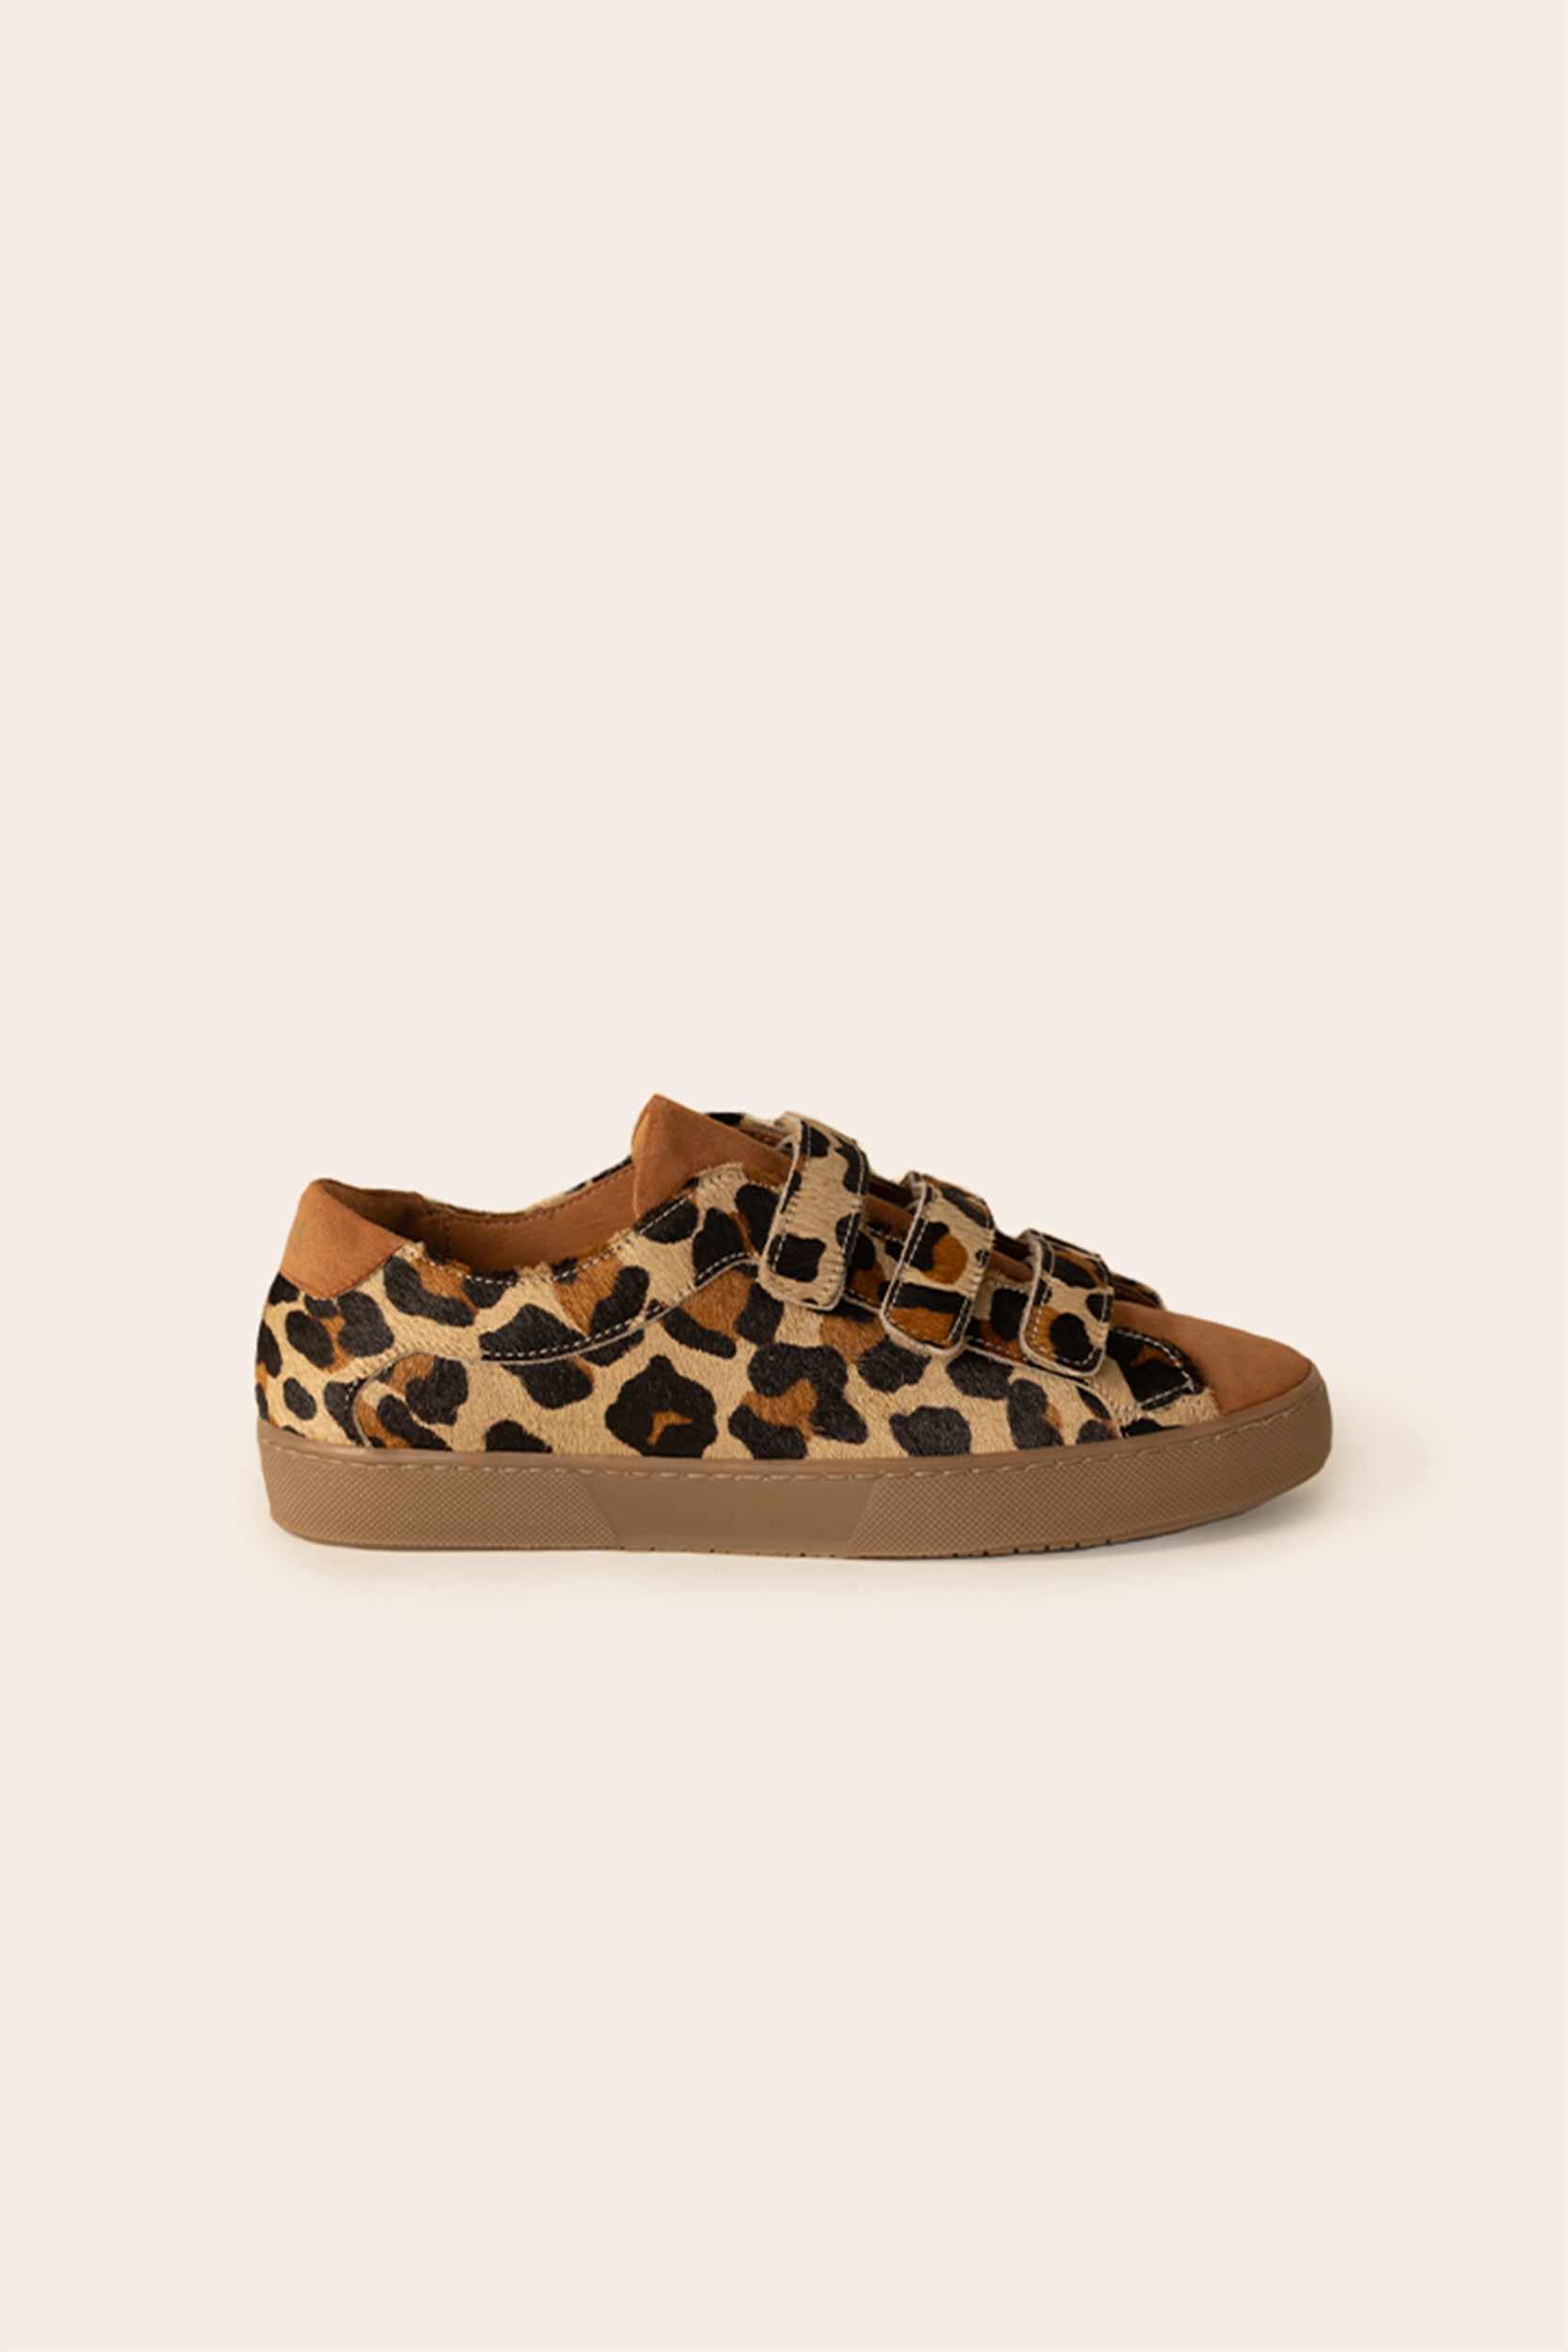 Honoré leopard sneakers